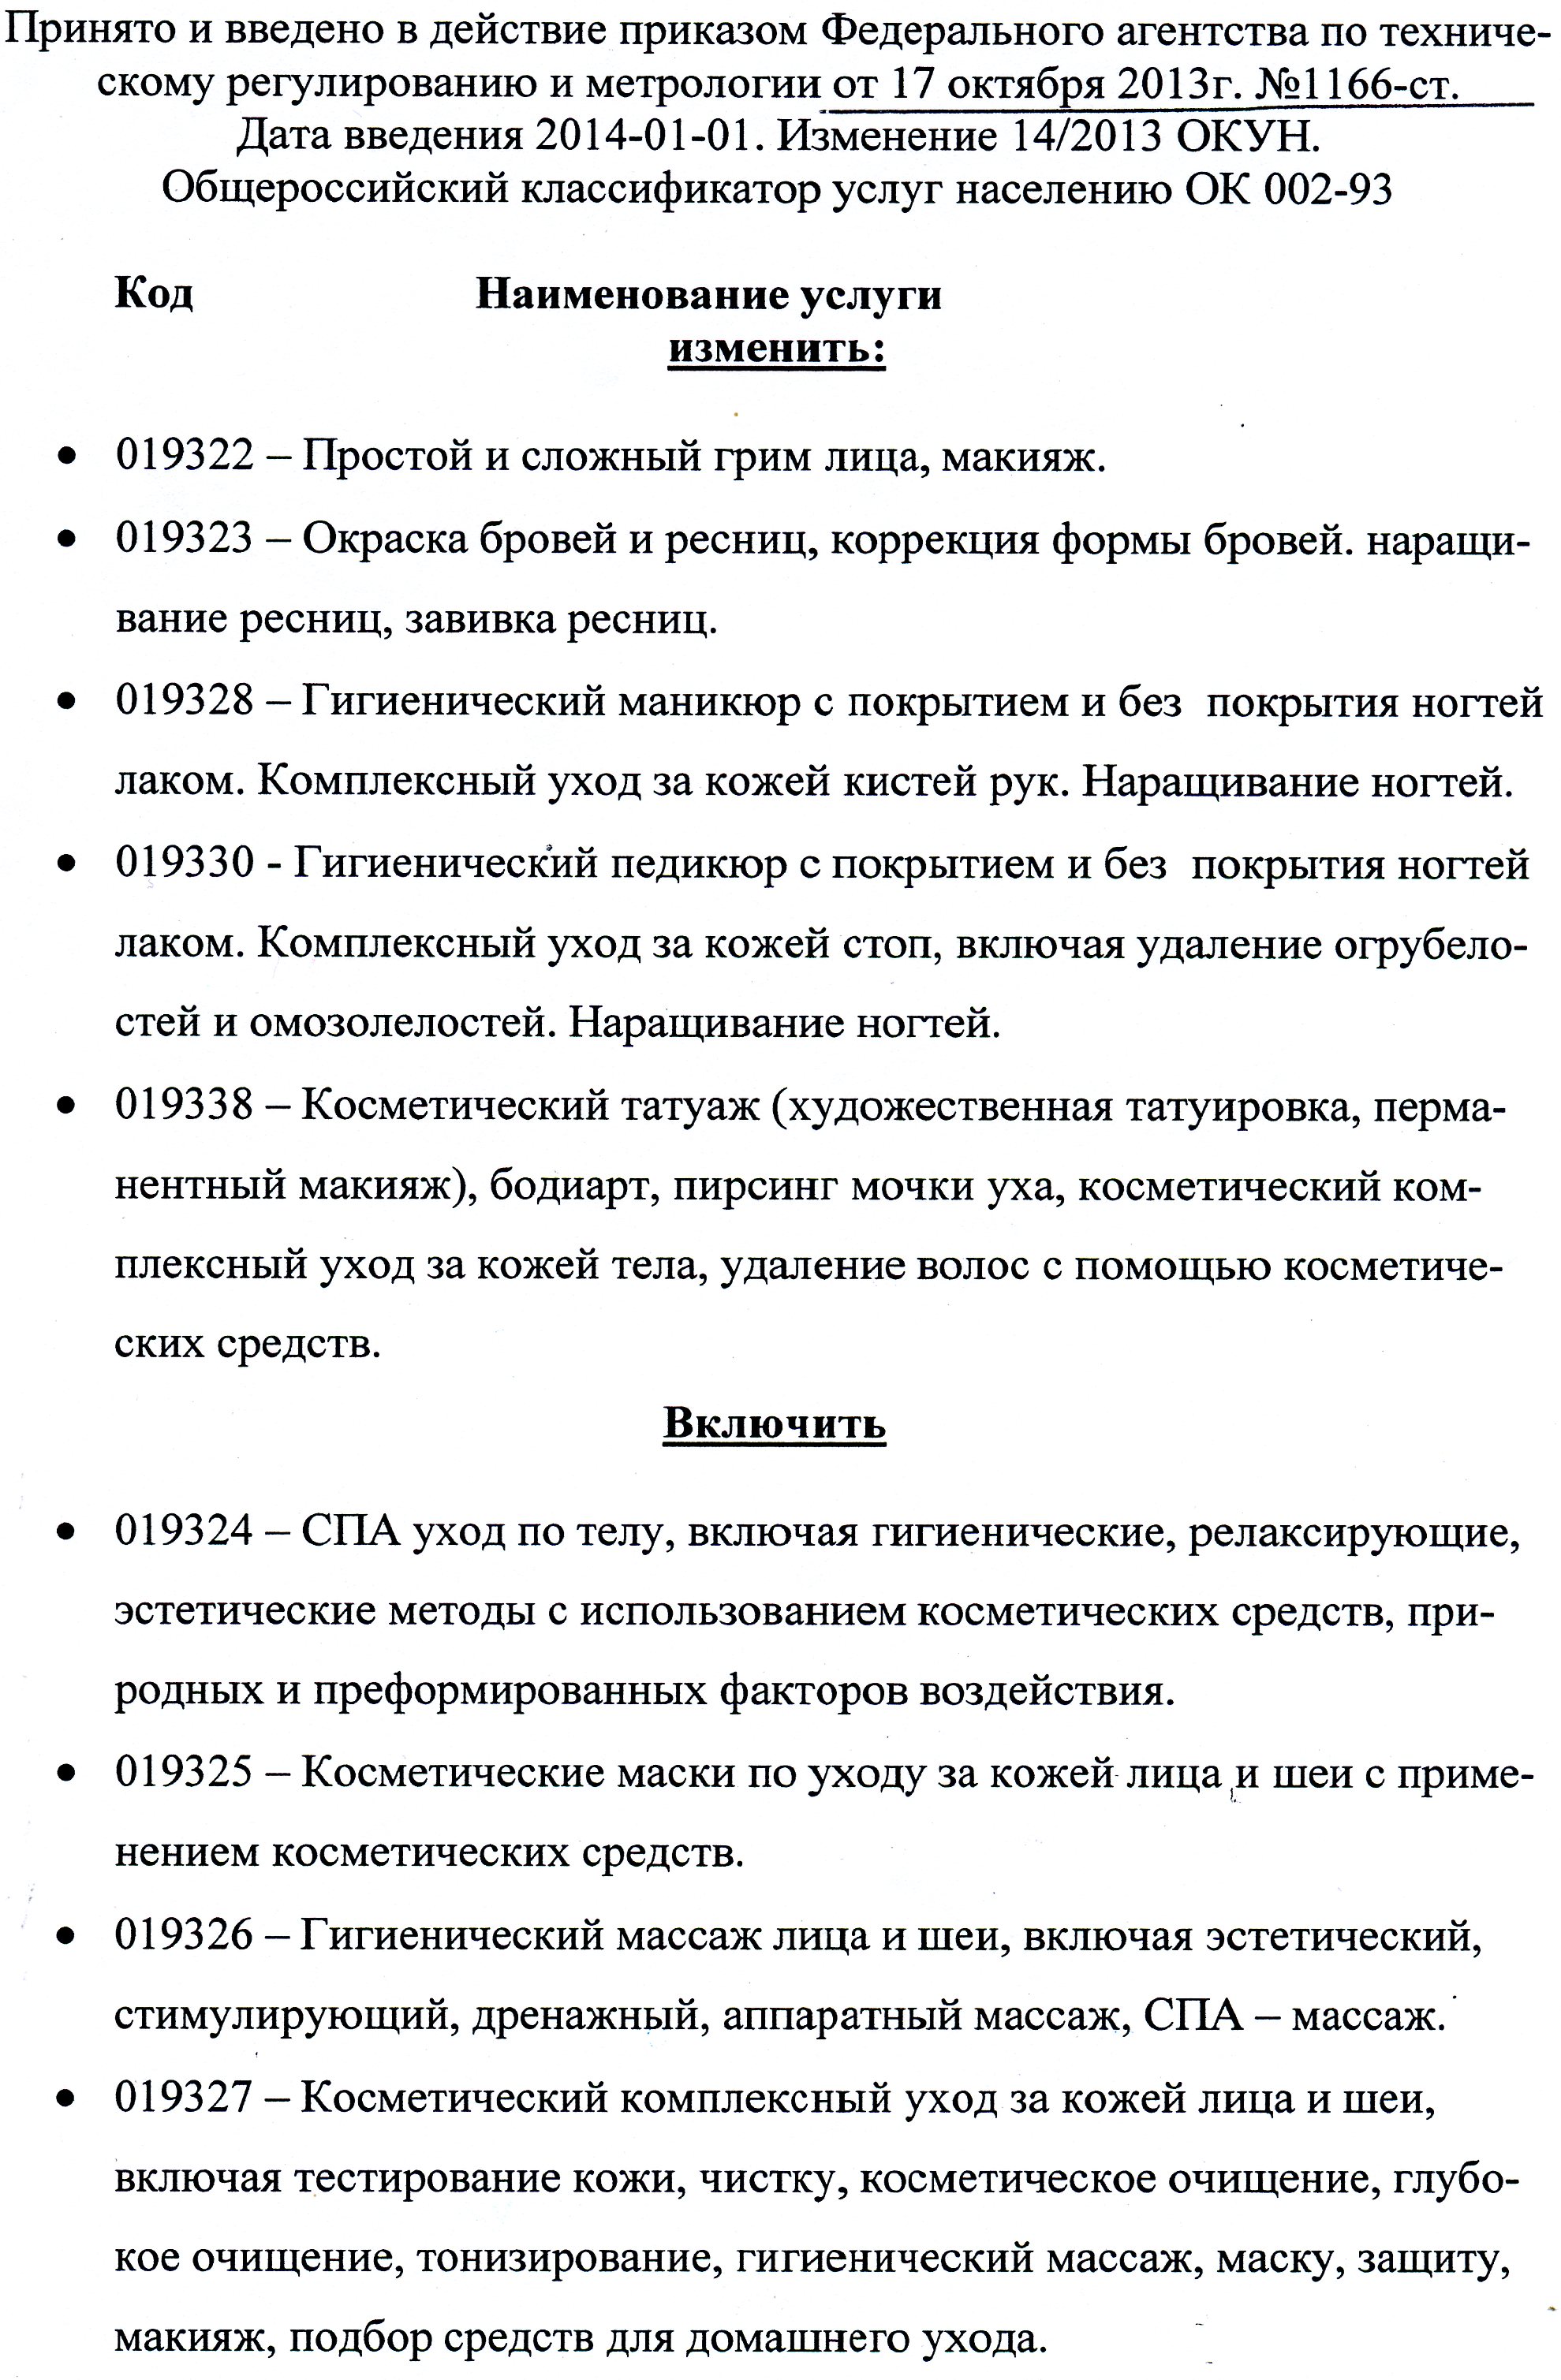 Изменения в общероссийском классификаторе услуг населению с 01.01.2014 года